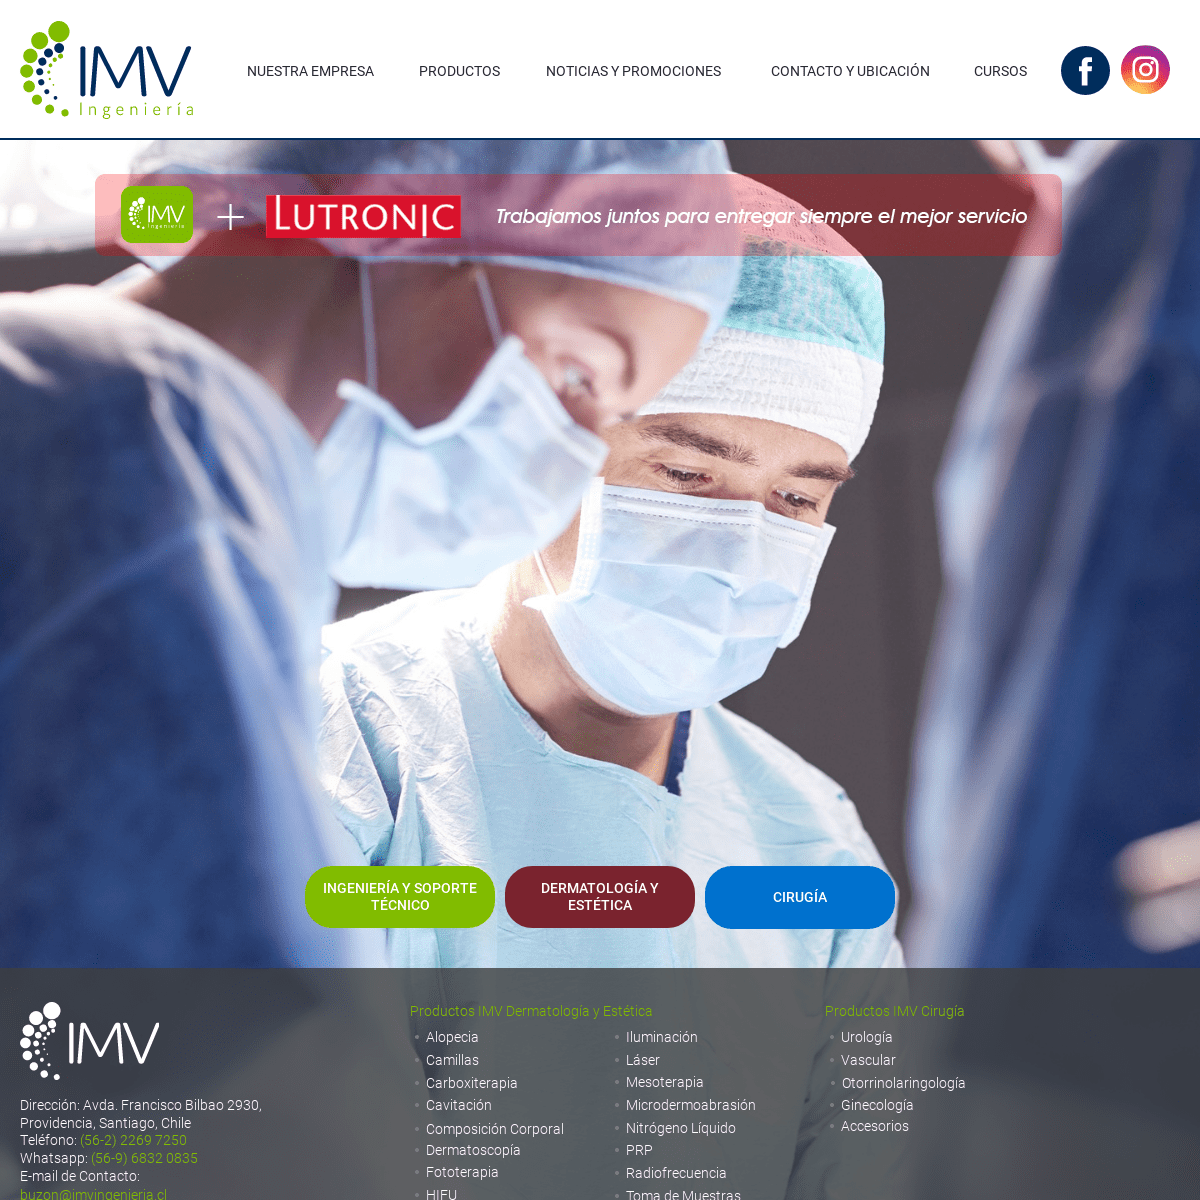 IMV Ingeniería| Ingeniería y Soporte Técnico| Equipos Médicos de Cirugía, Dermatología y Estética